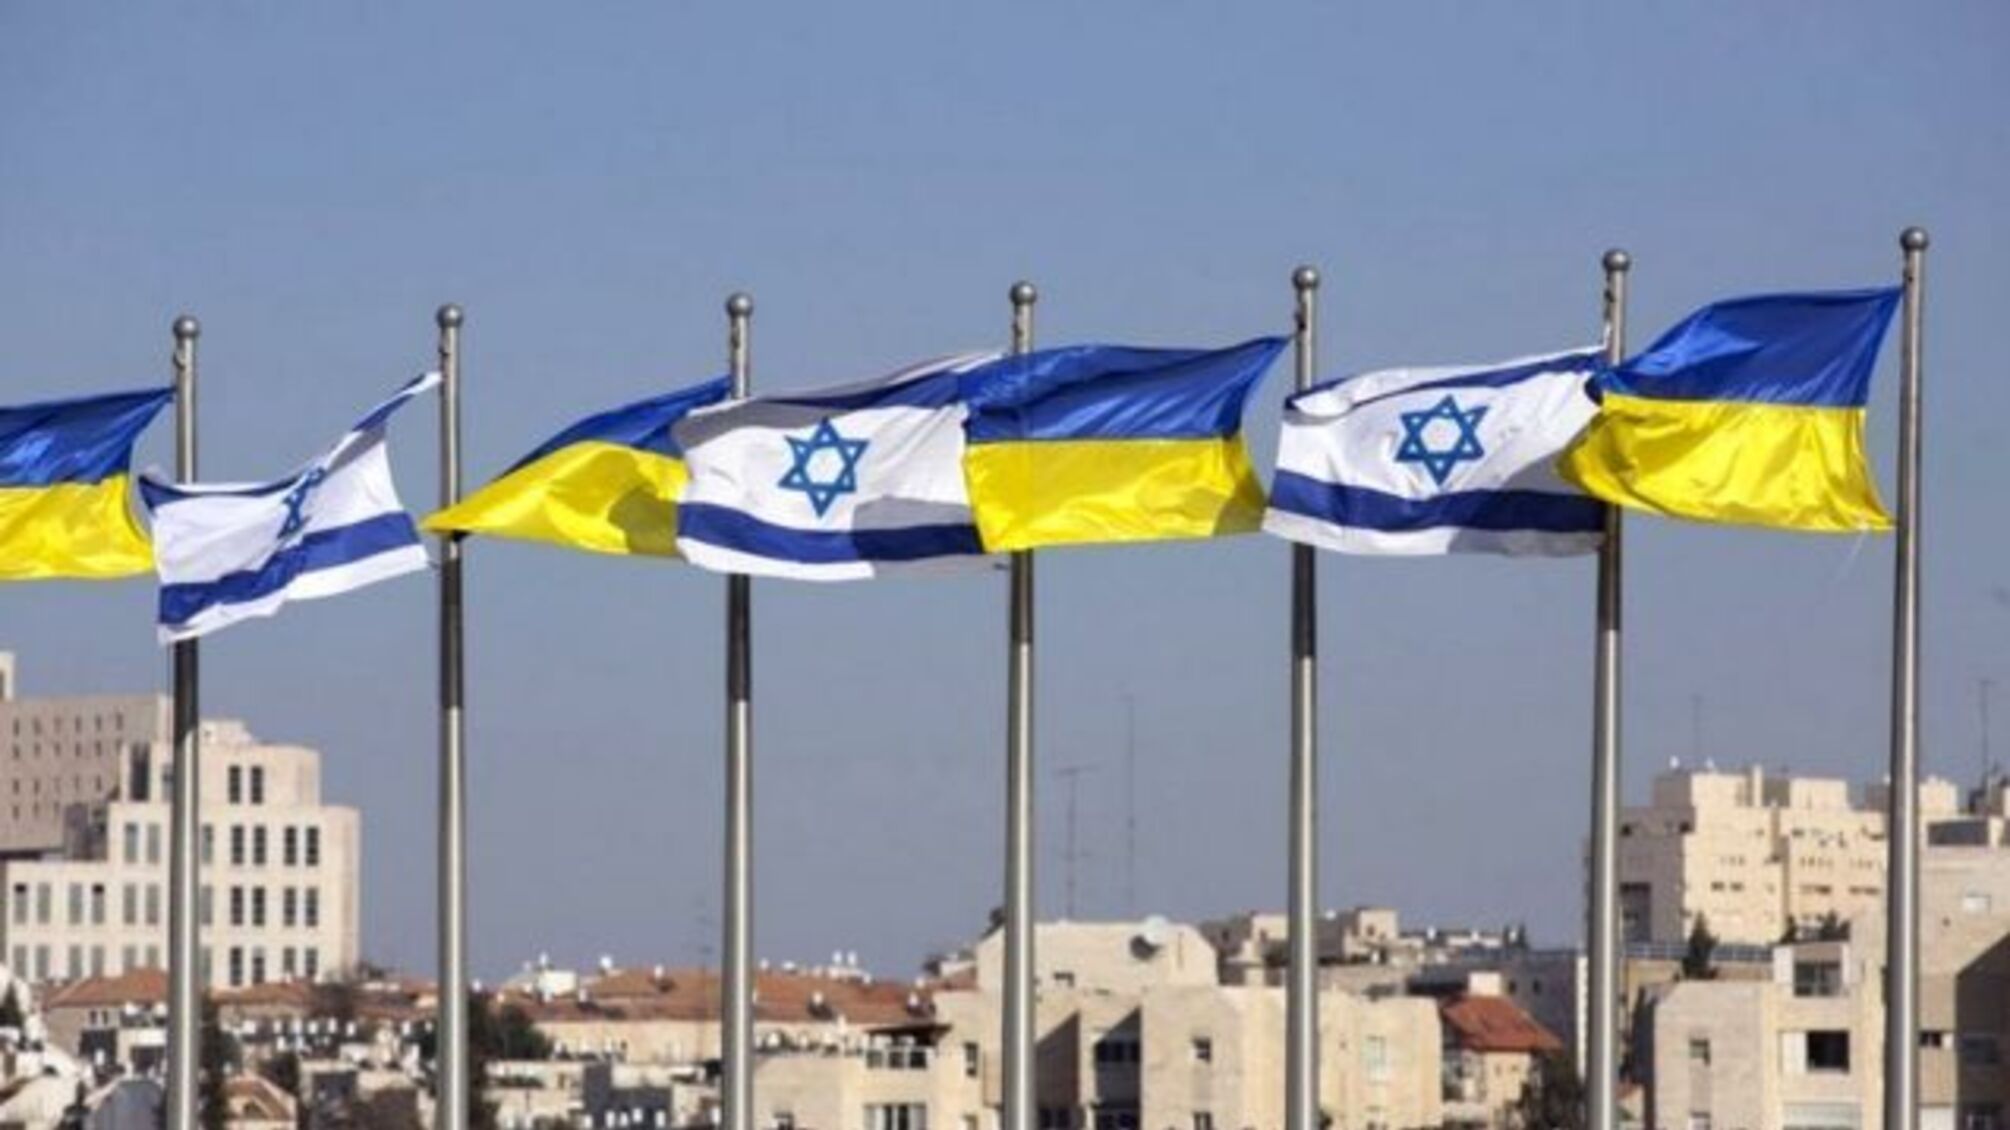 Кількість жертв серед українців в Ізраїлі зросла: дані від МЗС